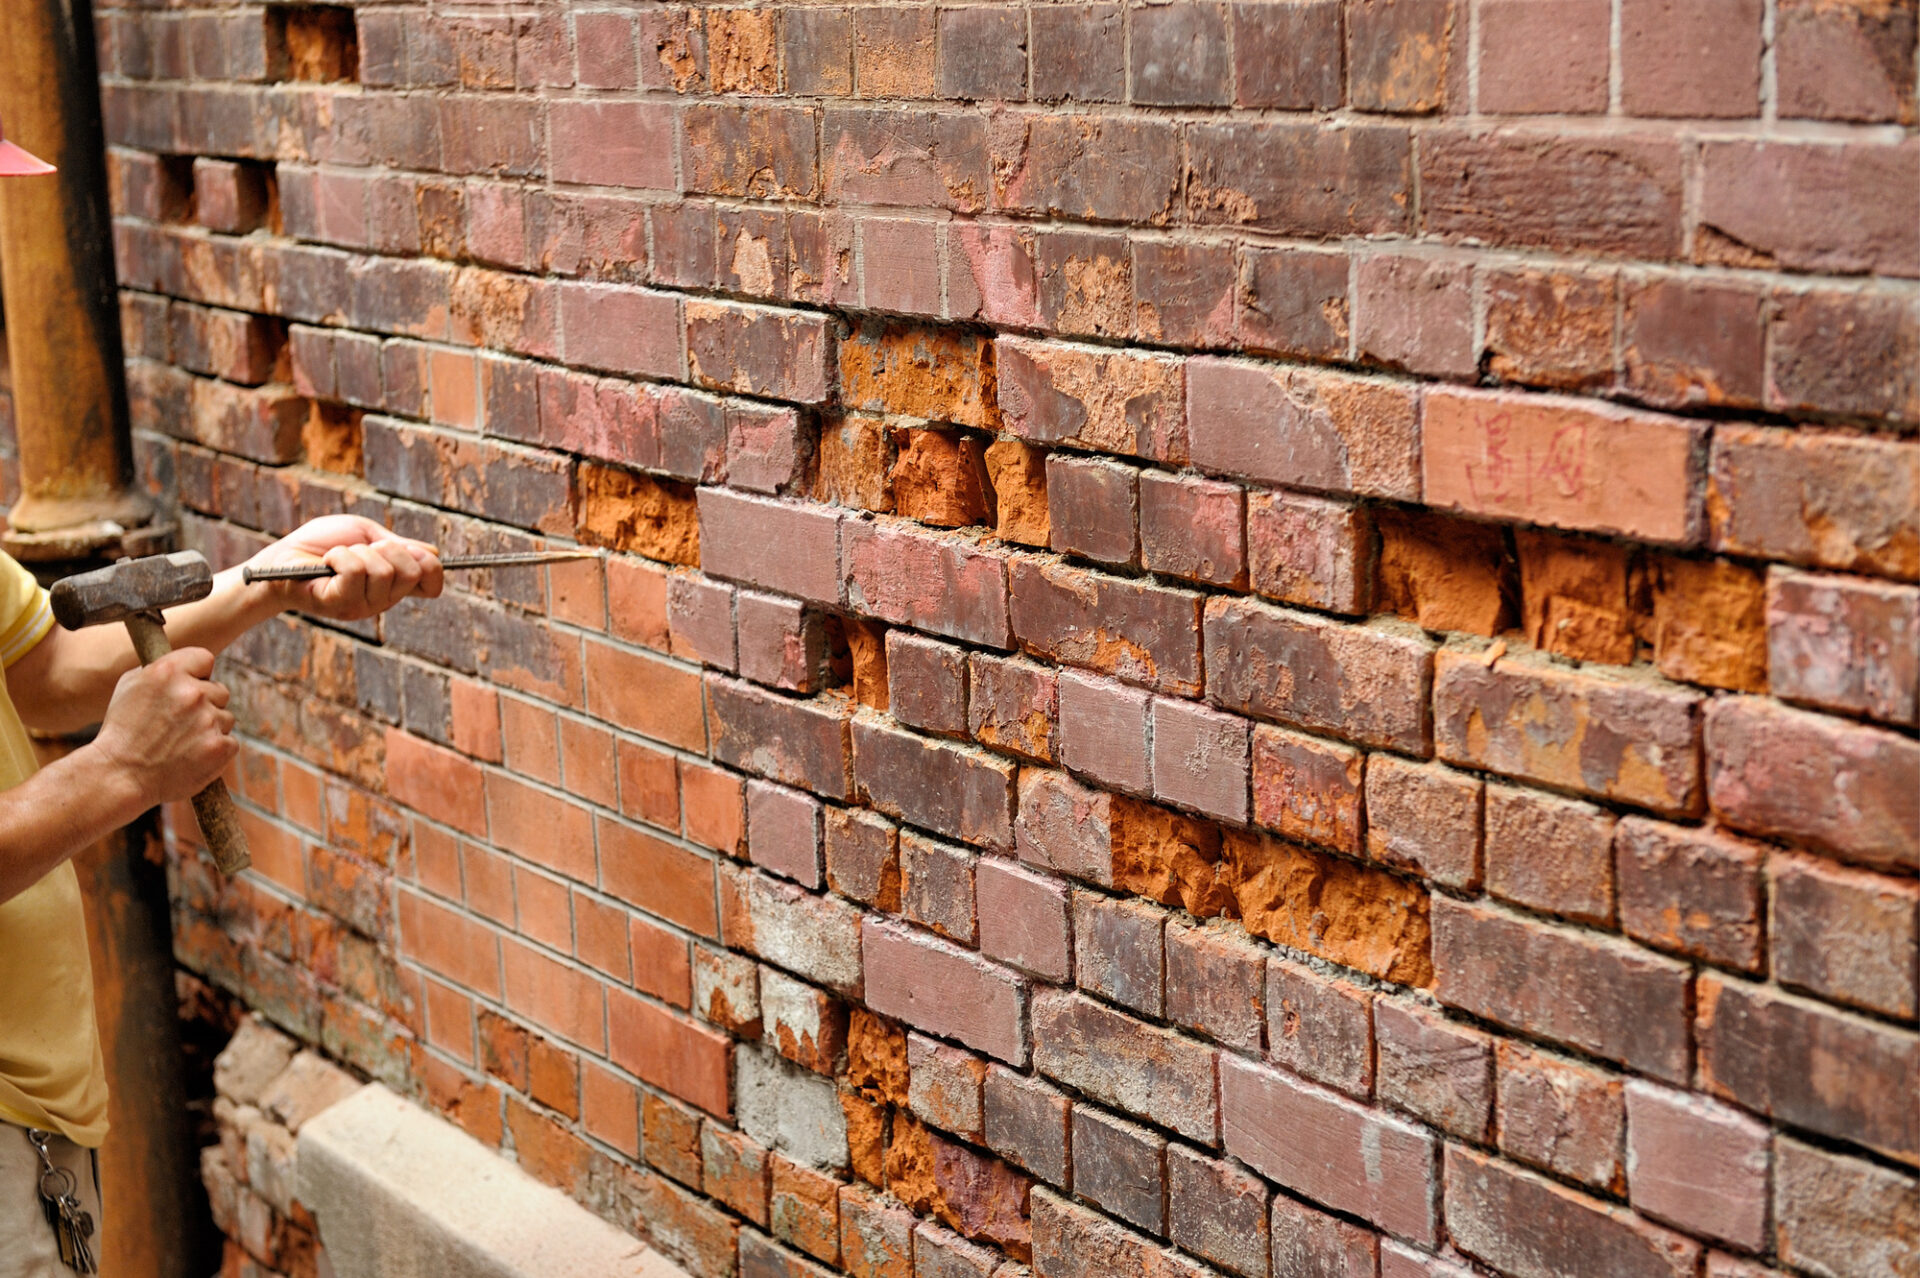 Repairing old brick wall using hammer and burin.